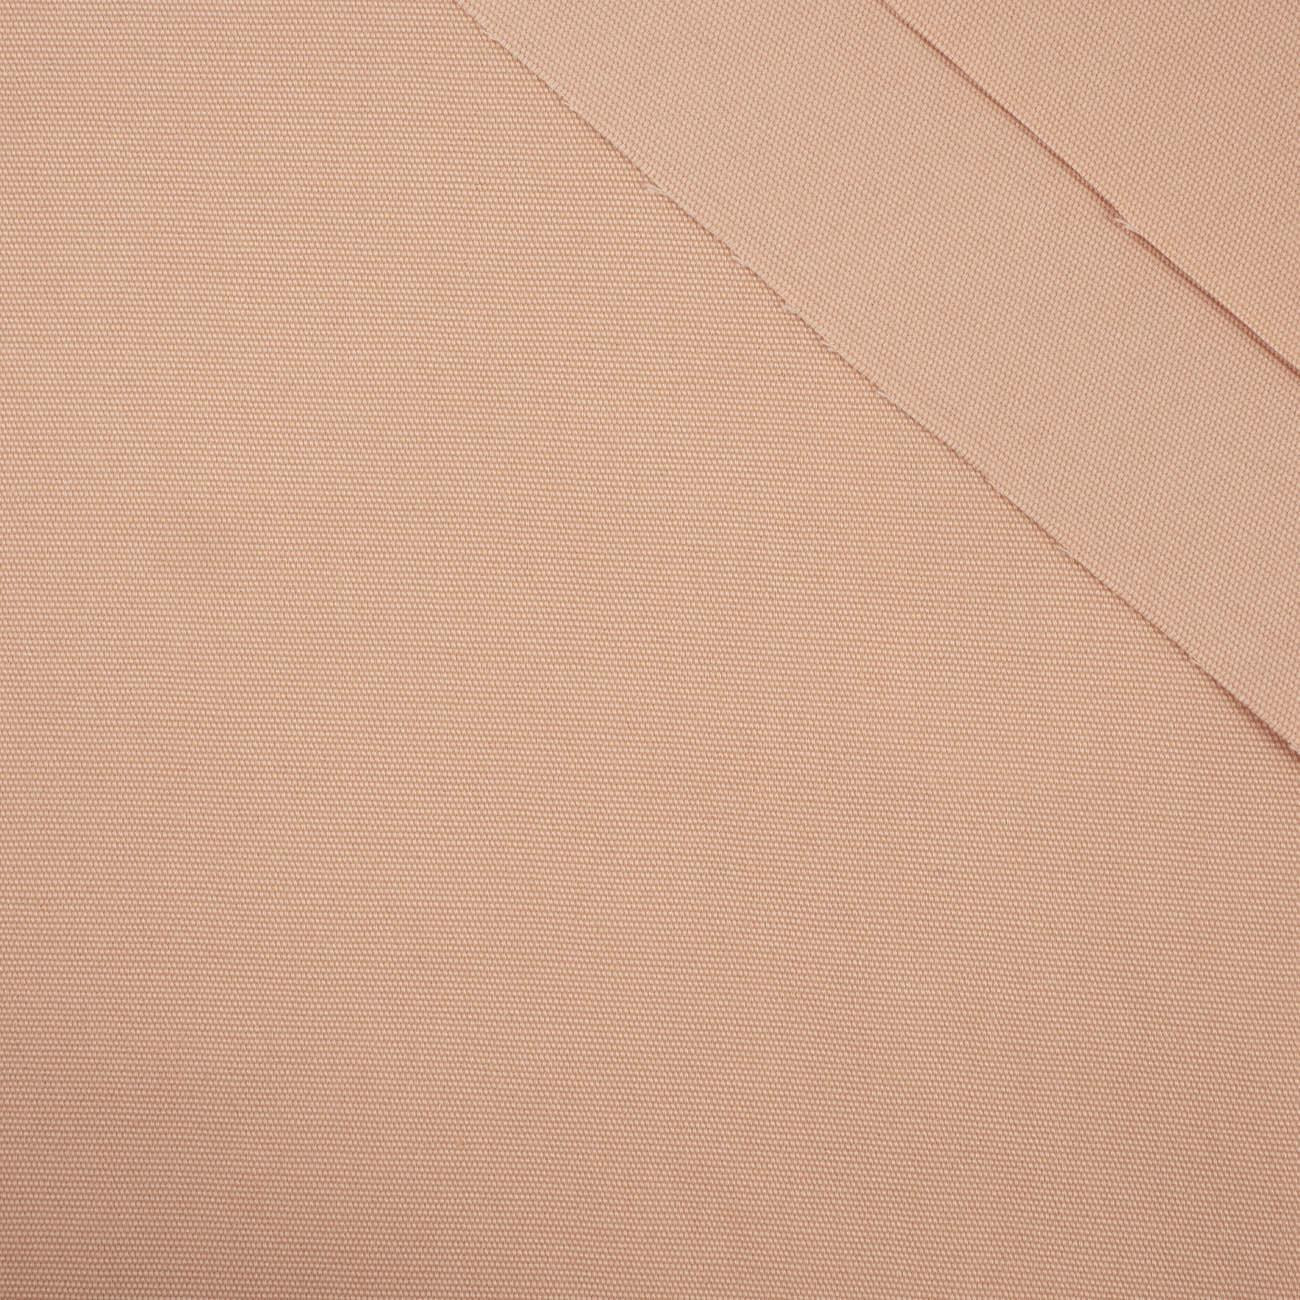 Růžově křemenná - džínová tkanina 200g